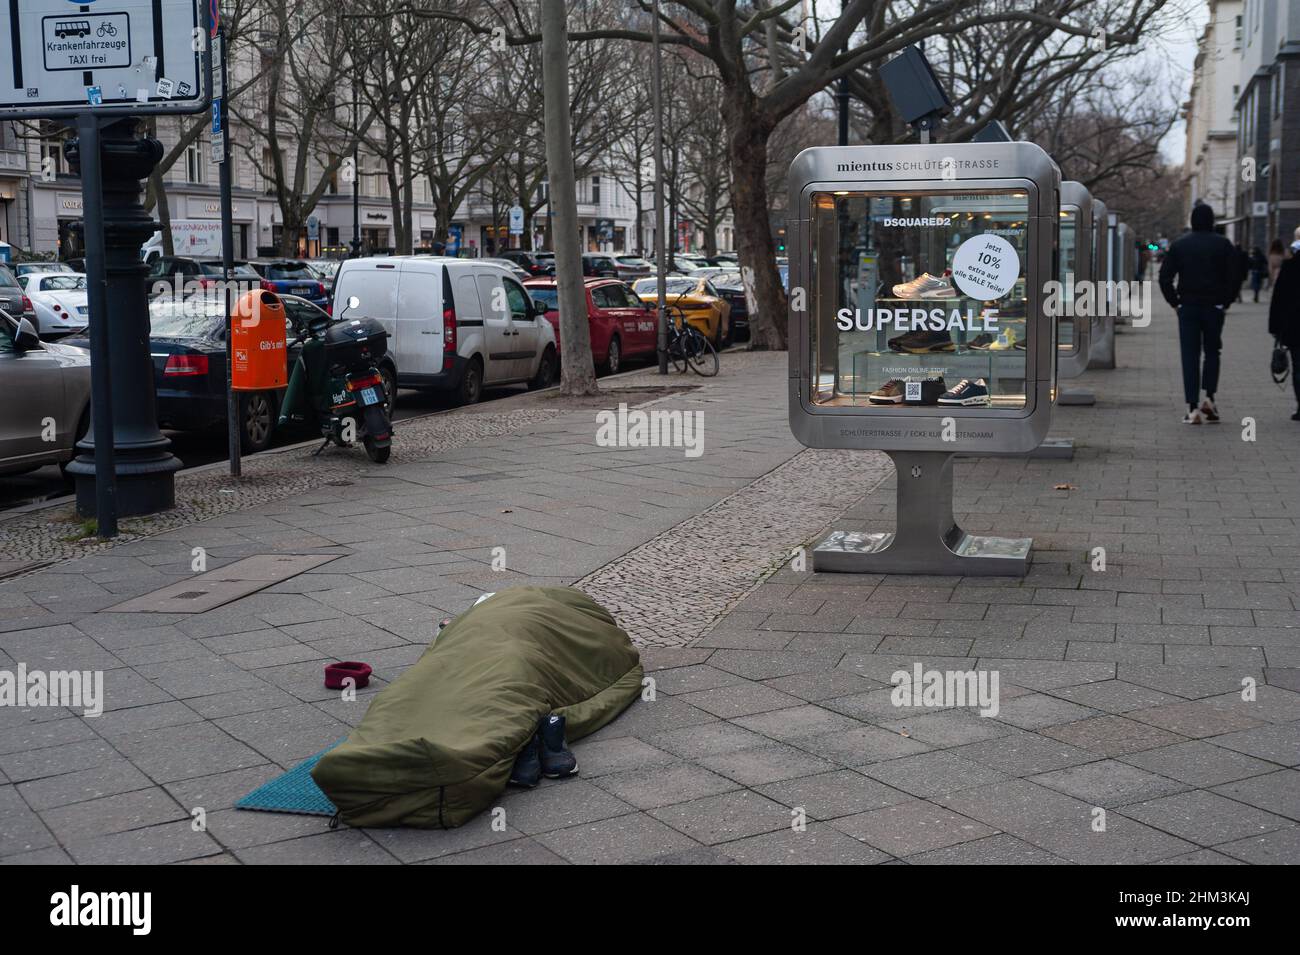 05.02.2022, Berlino, Germania, Europa - la persona senza tetto dorme nel sacco a pelo sul marciapiede di fronte ad un negozio di moda lungo Kurfuerstendamm. Foto Stock